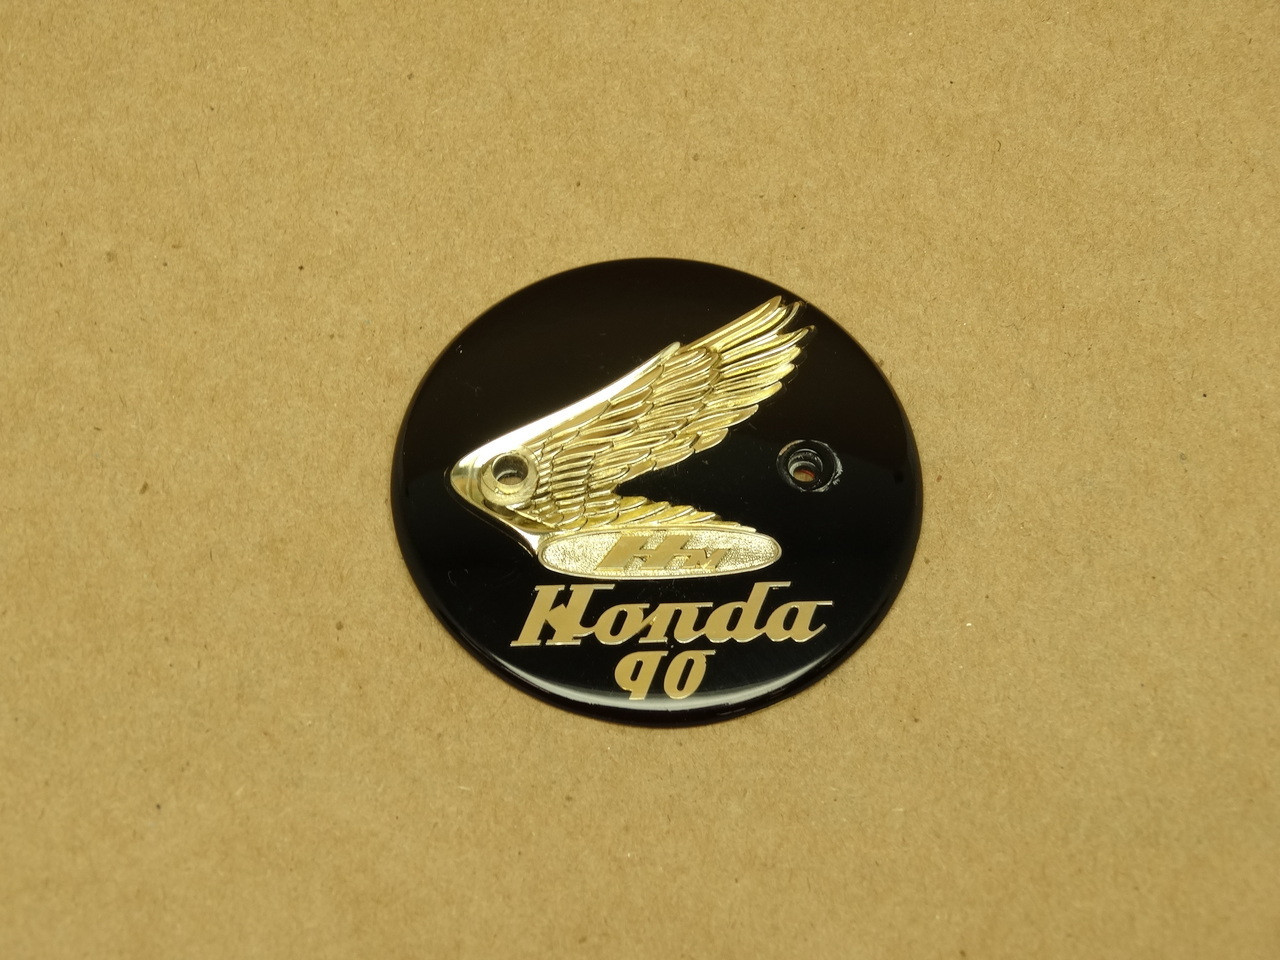 NOS Honda C200 CA200 90 Left Gas Tank Emblem Badge 87122-030-000